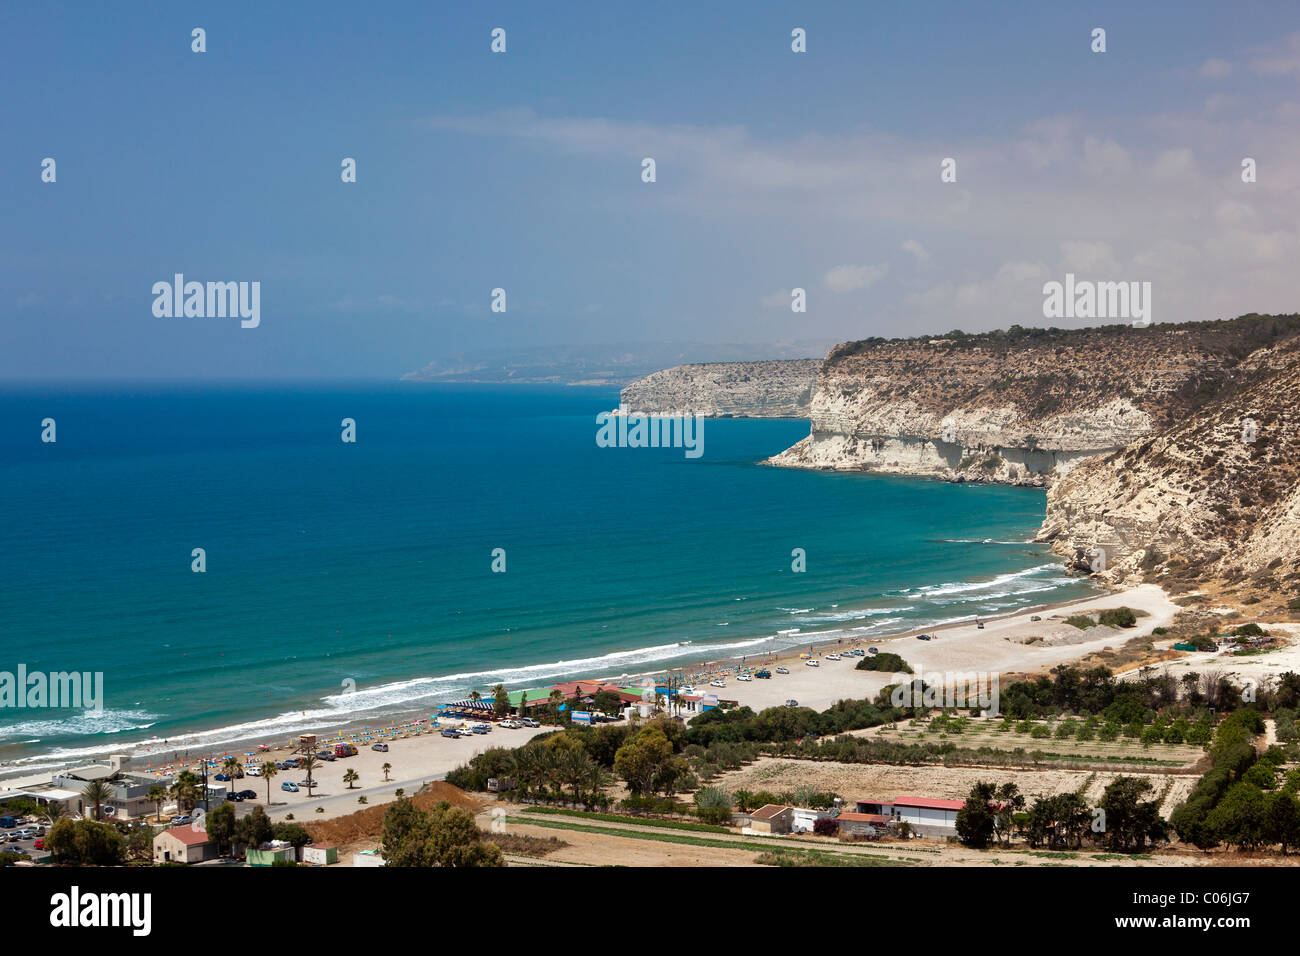 Ci-dessous la côte le site antique de Kourion, Kourion Beach, près de Episkopi, sud de Chypre, Côte Sud, Grec, Chypre, l'Europe du Sud Banque D'Images